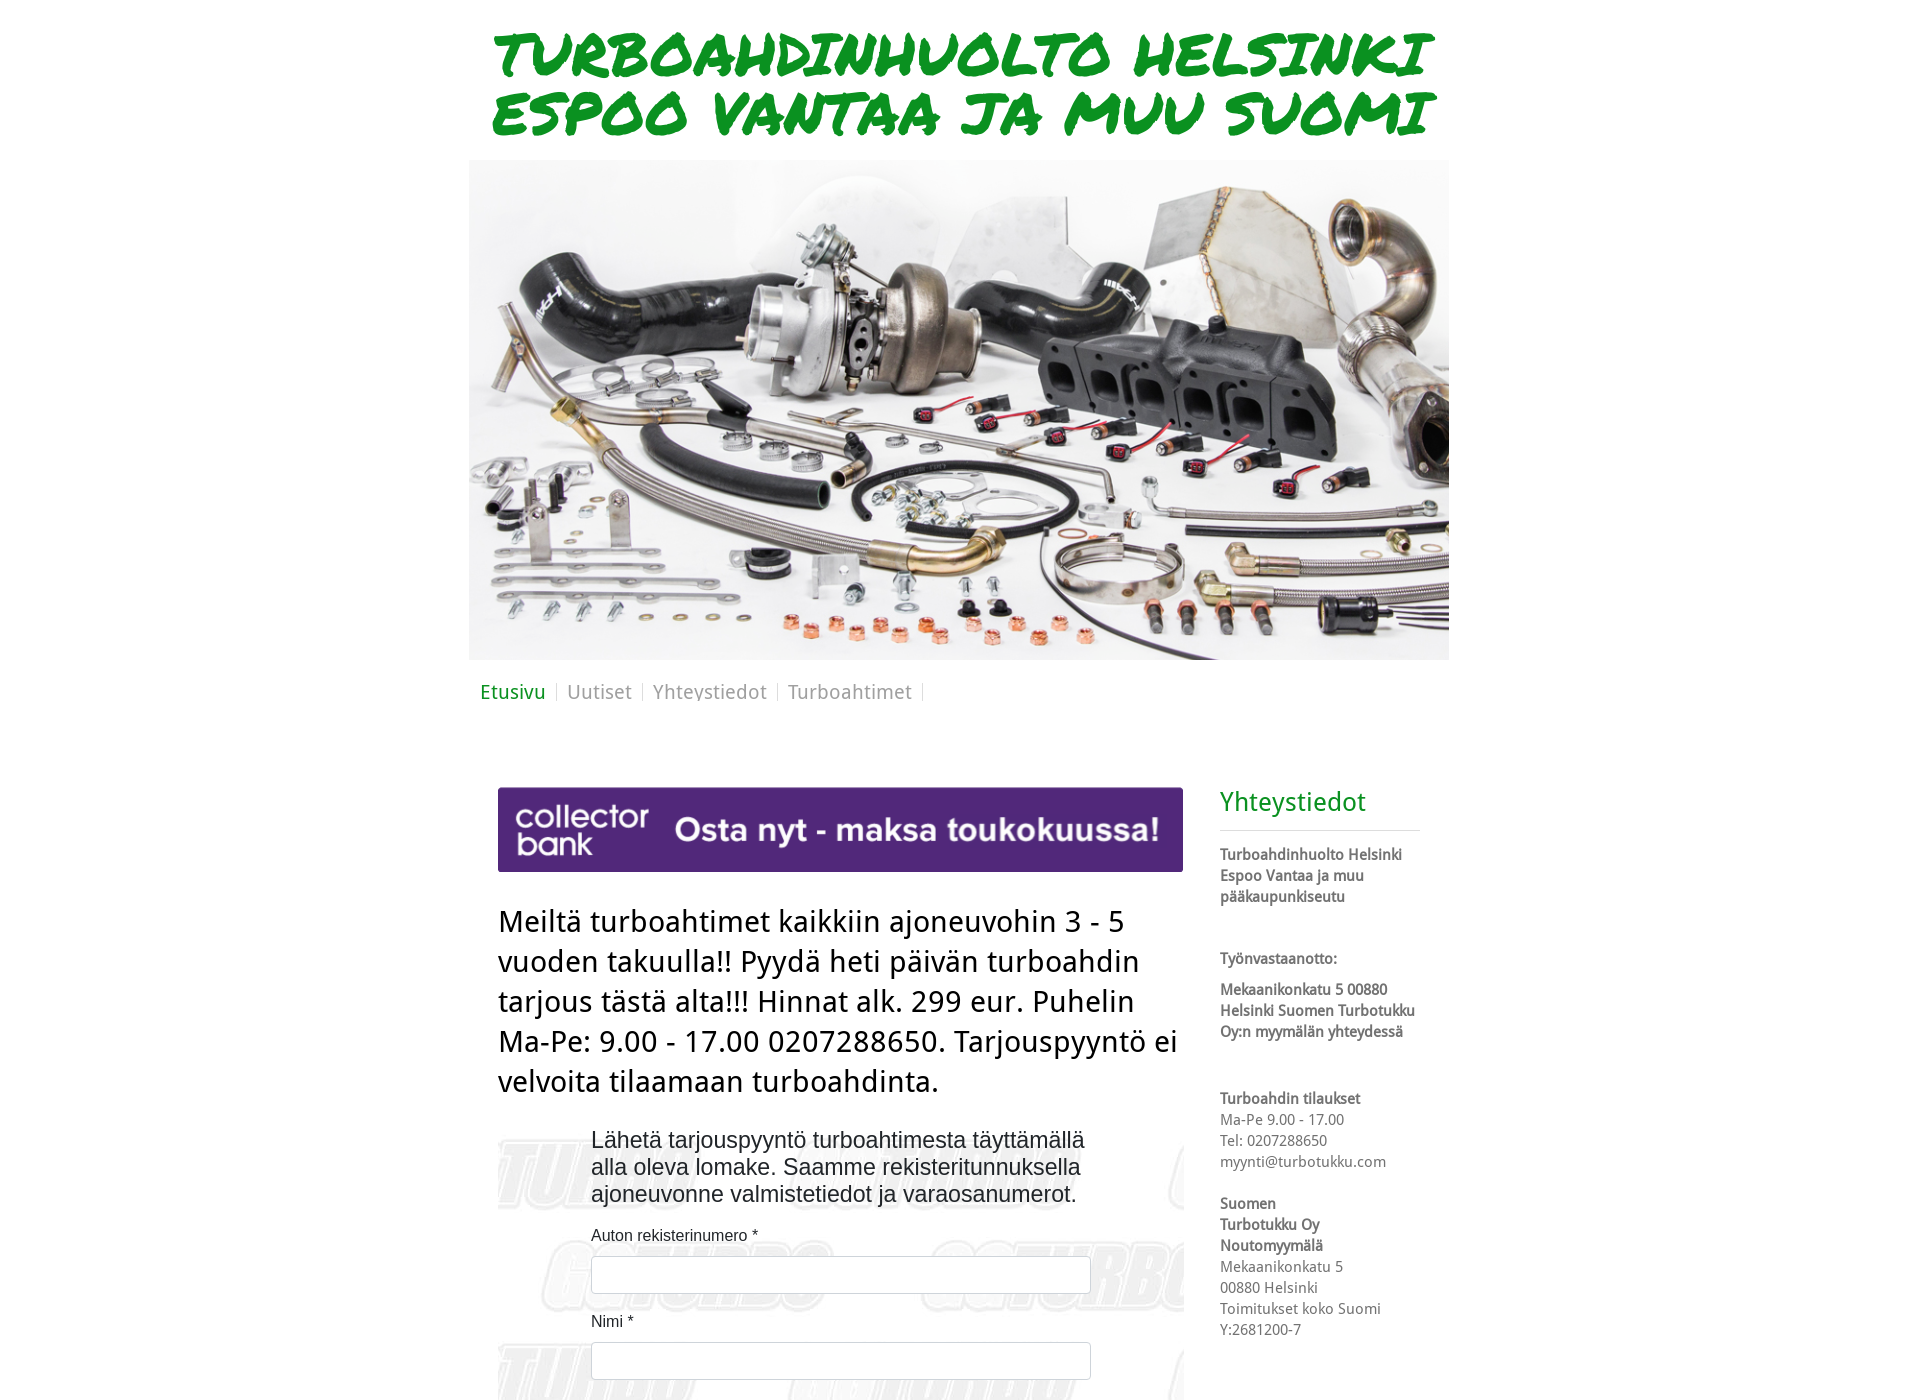 Skärmdump för turbohuoltosipoo.fi